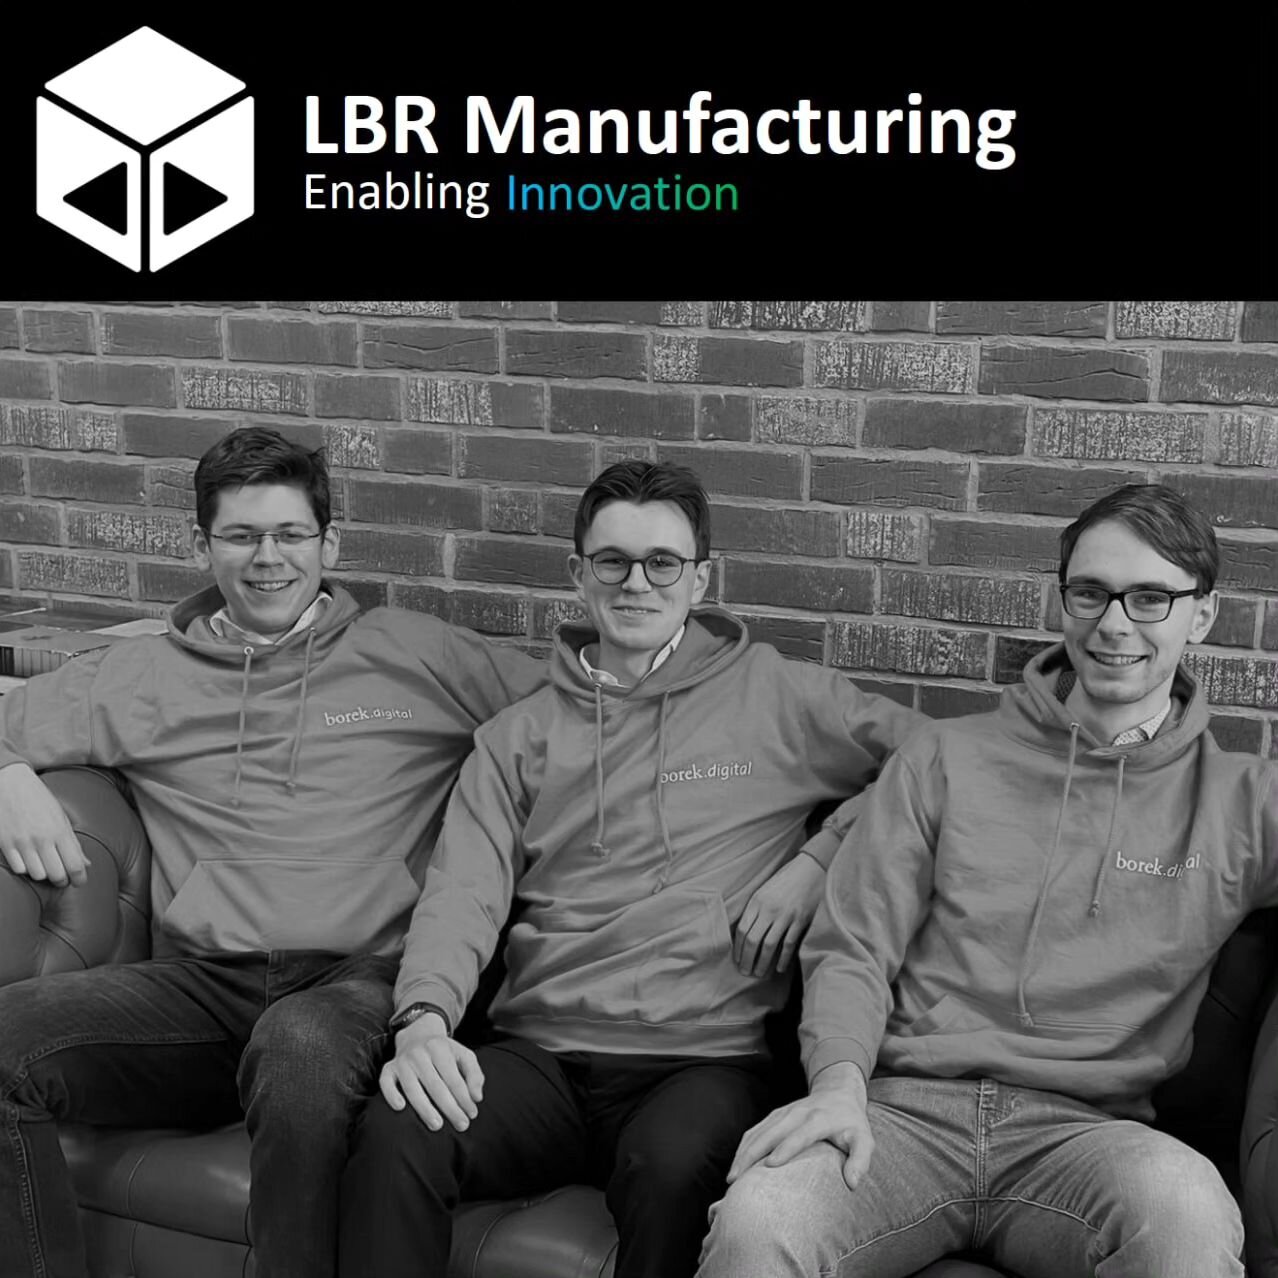 🎉 Endlich ist es soweit! Wir, ein Team leidenschaftlicher Ingenieure, platzen vor Freude, euch nach &uuml;ber einem Jahr voller harter Arbeit unser neues Start-up vorstellen zu d&uuml;rfen: LBR Manufacturing! Unsere Mission? Die Zukunft der Produkte